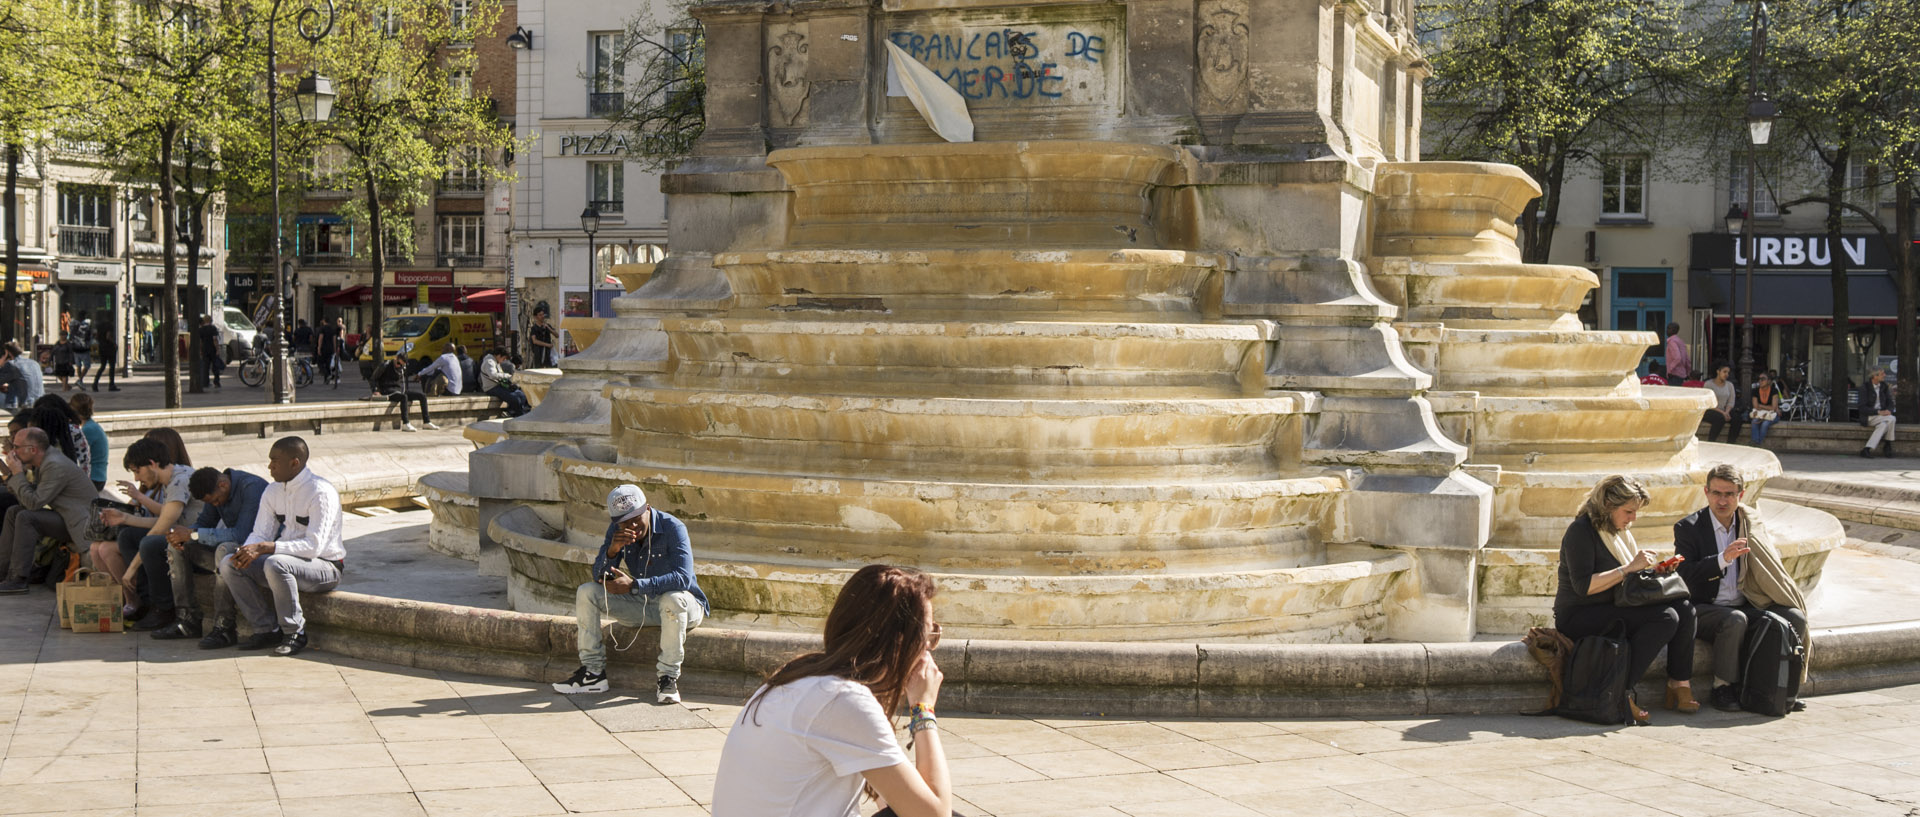 Mardi 14 avril 2015, 16:28, fontaine des Innocents, Paris